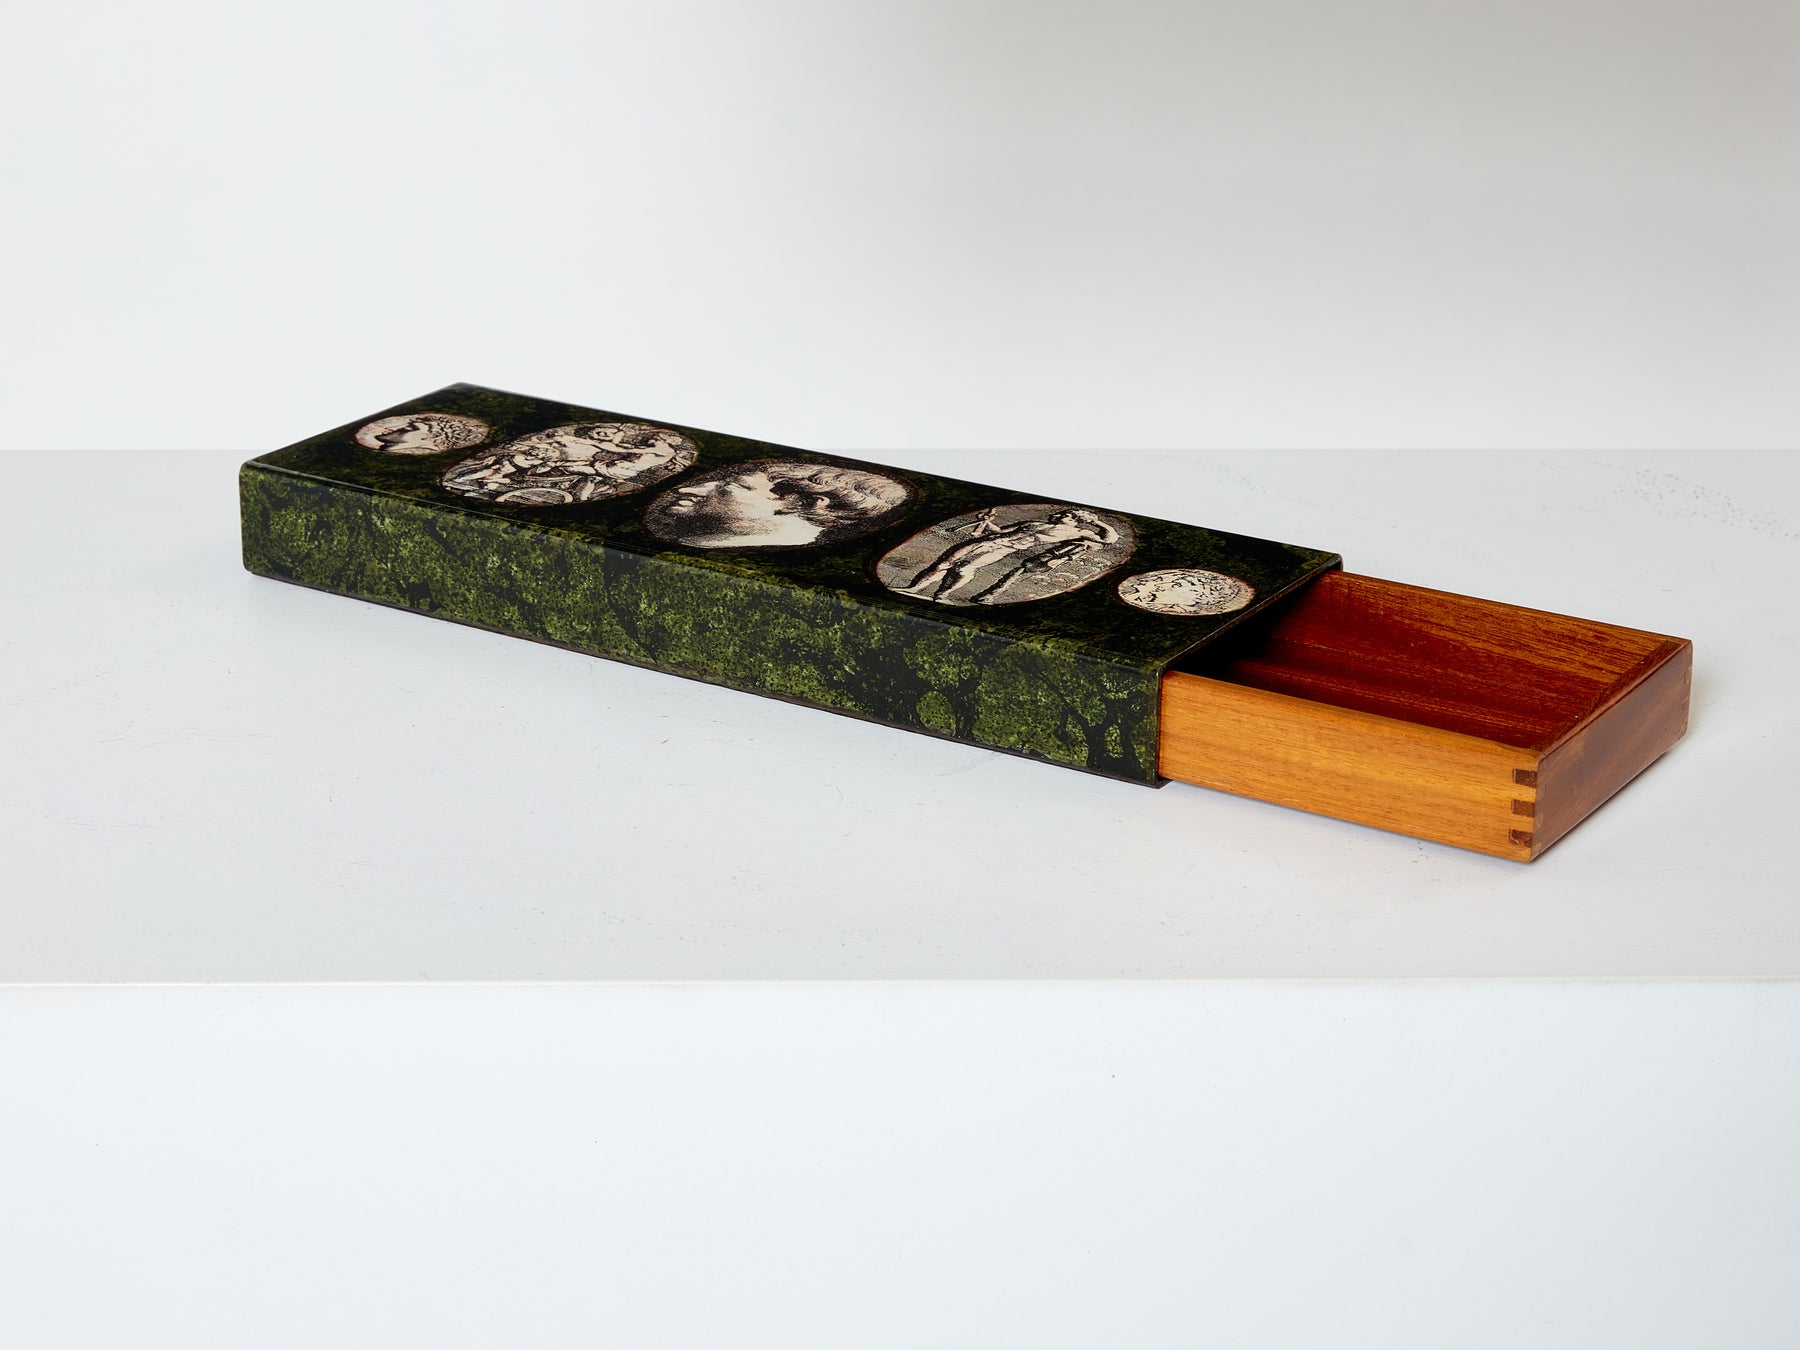 Piero Fornasetti enameled metal and mahogany box 1950